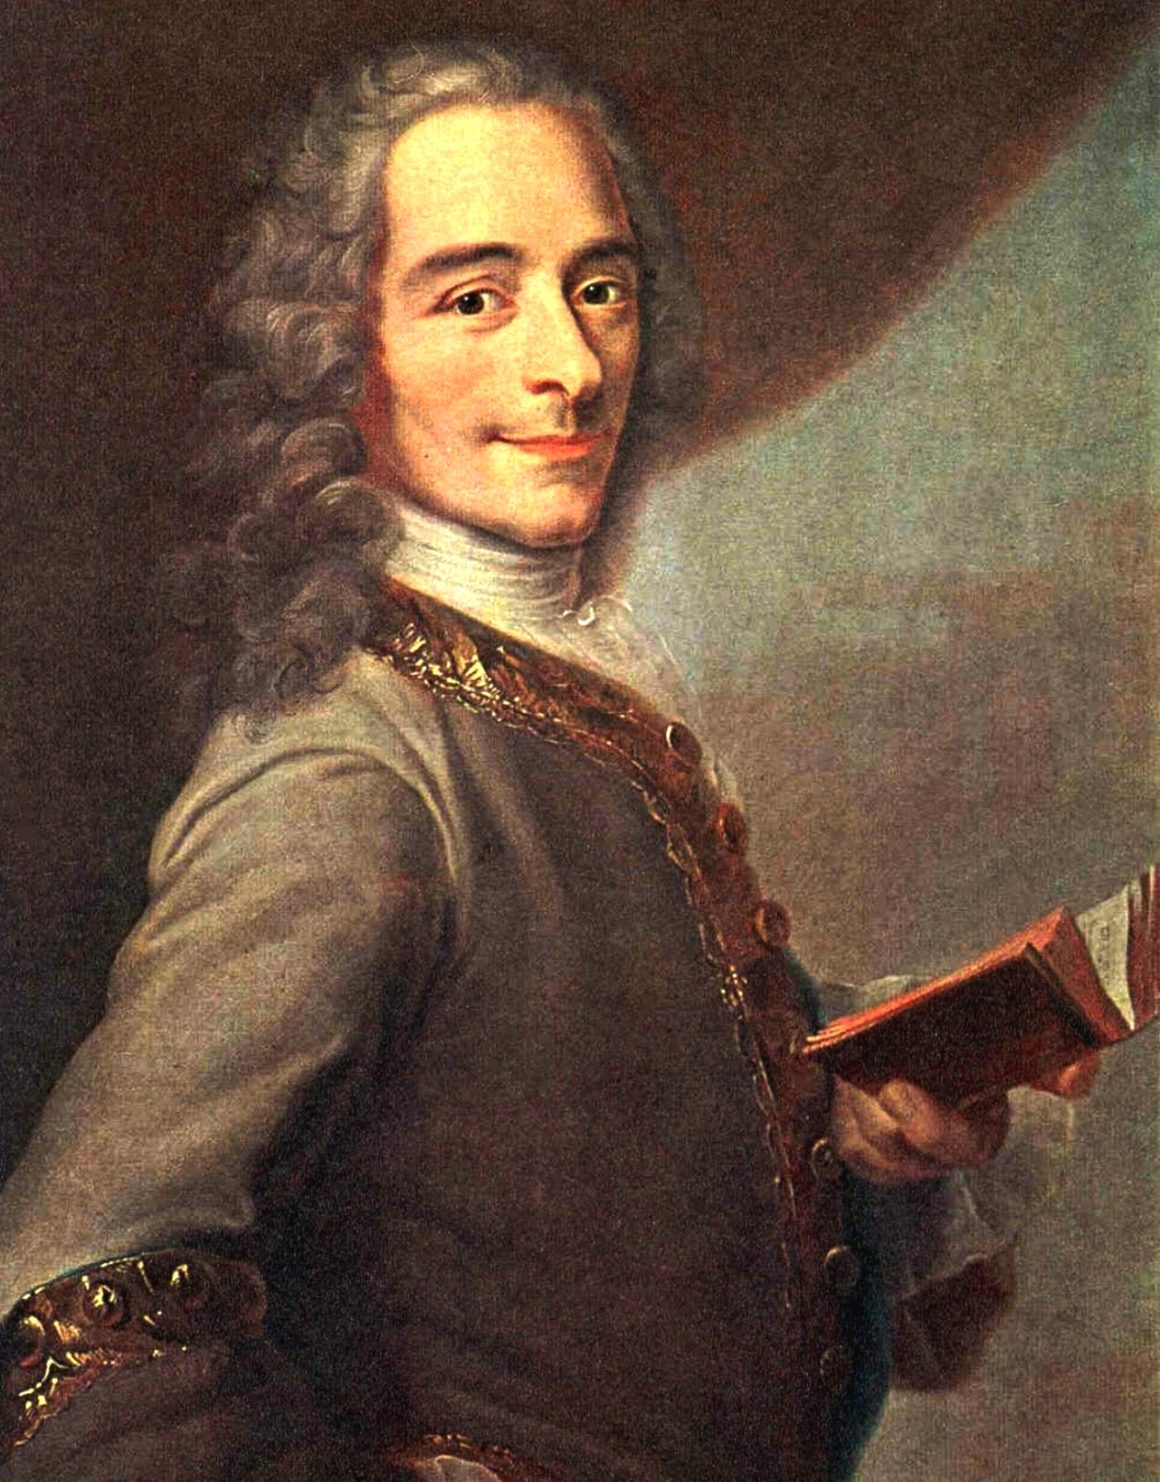 François-Marie Arouet dit Voltaire, histoire et biographie de Voltaire